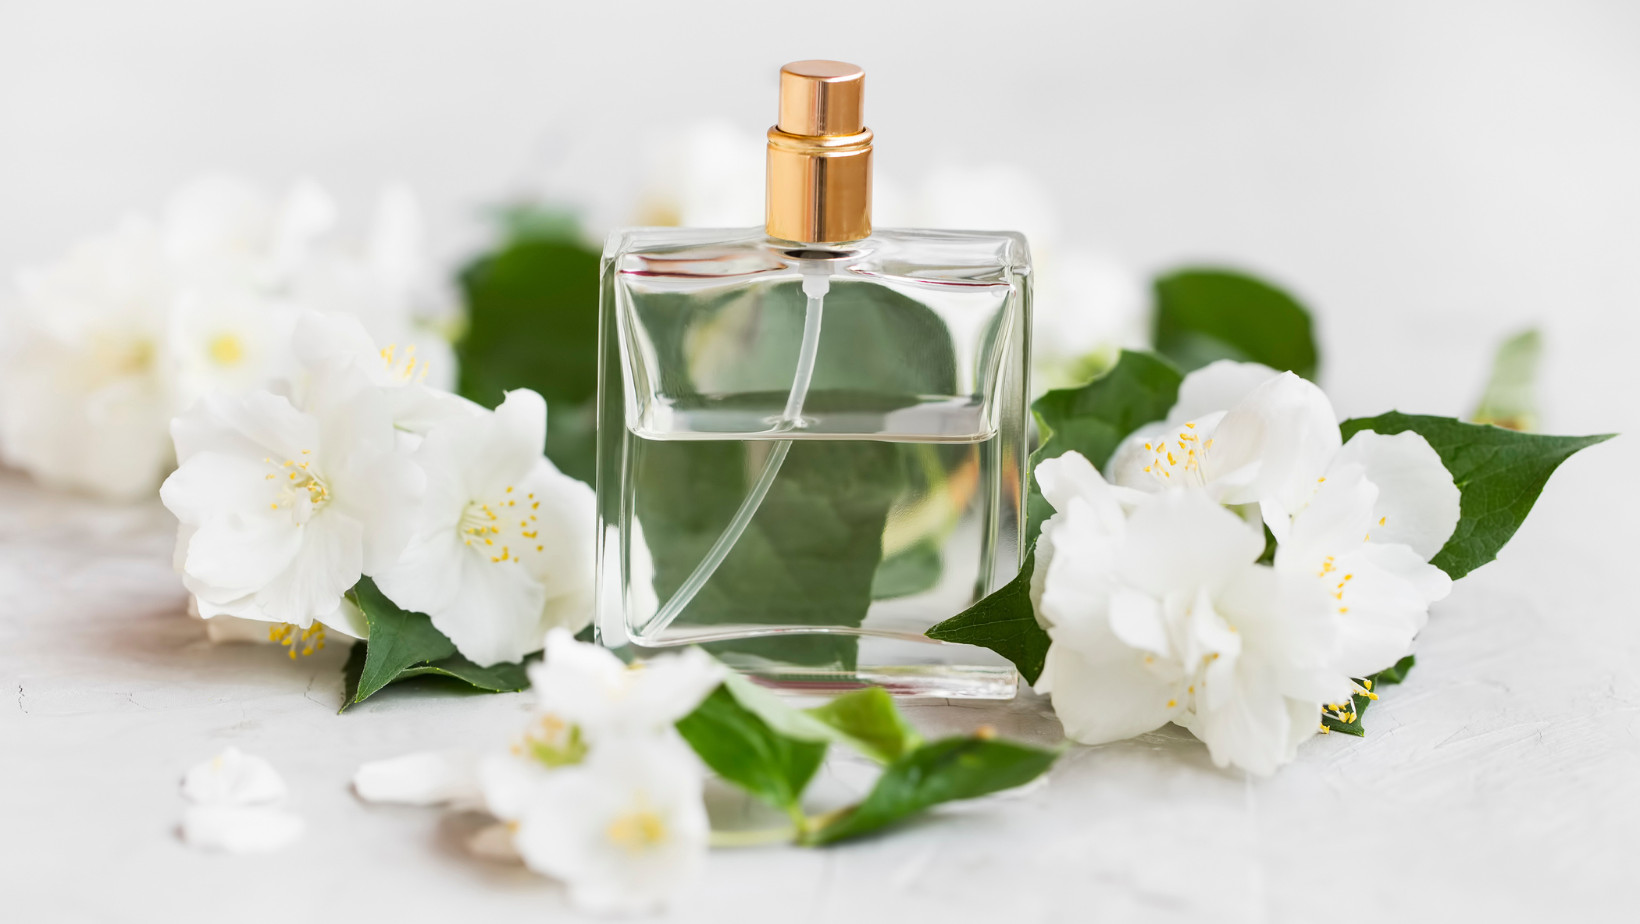 Rekomendasi Parfume Wanita Dengan Aroma Green Tea Yang Menyegarkan Dan Tahan Lama